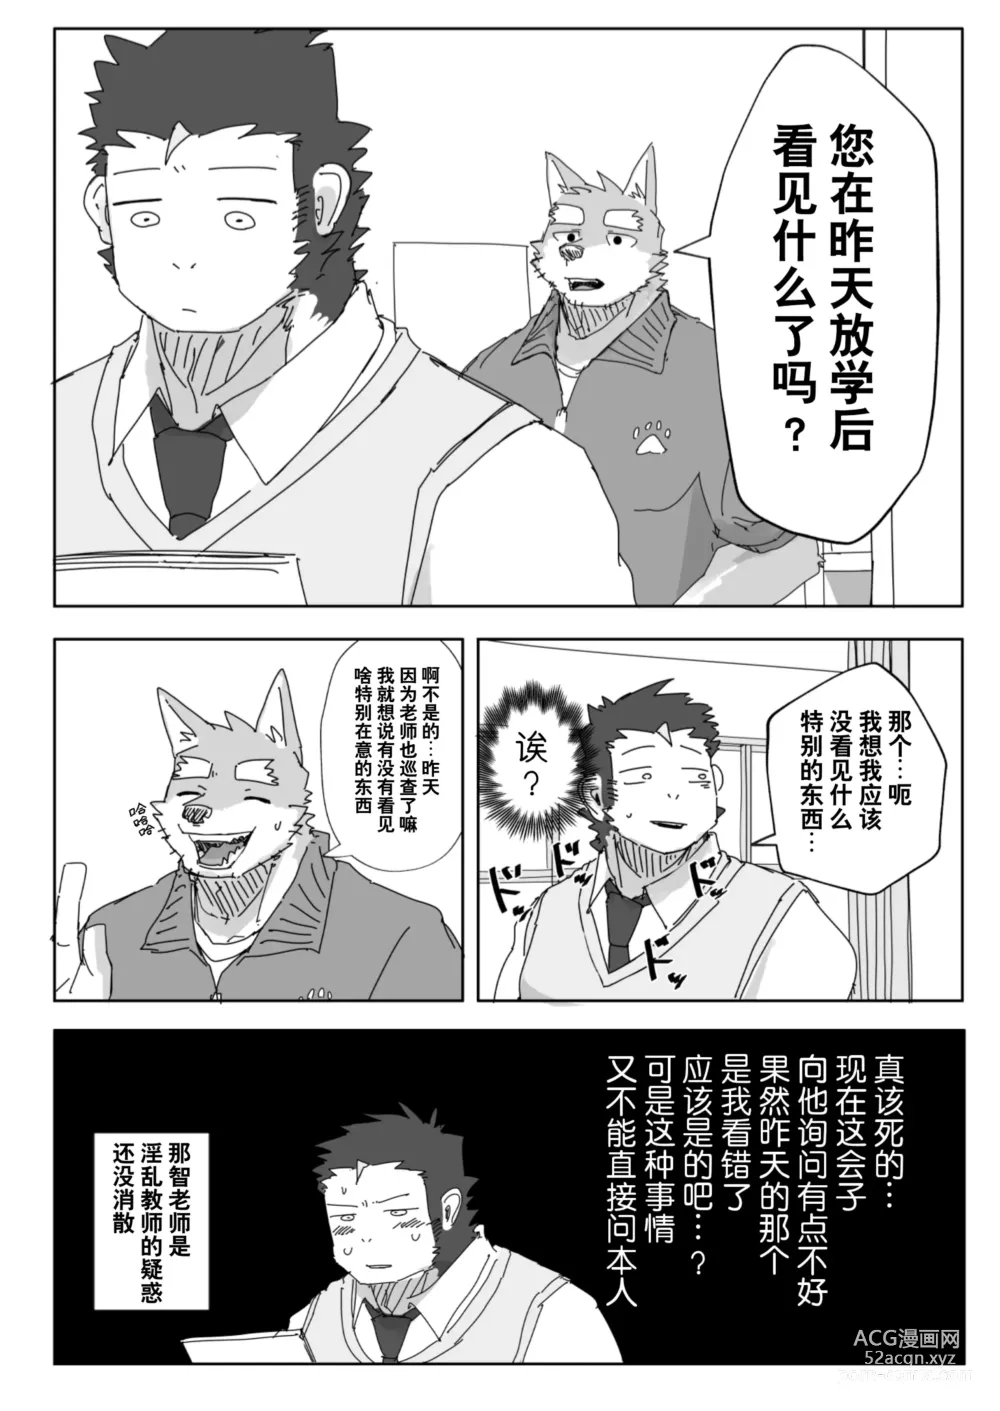 Page 19 of manga 放学后的游戏+后续